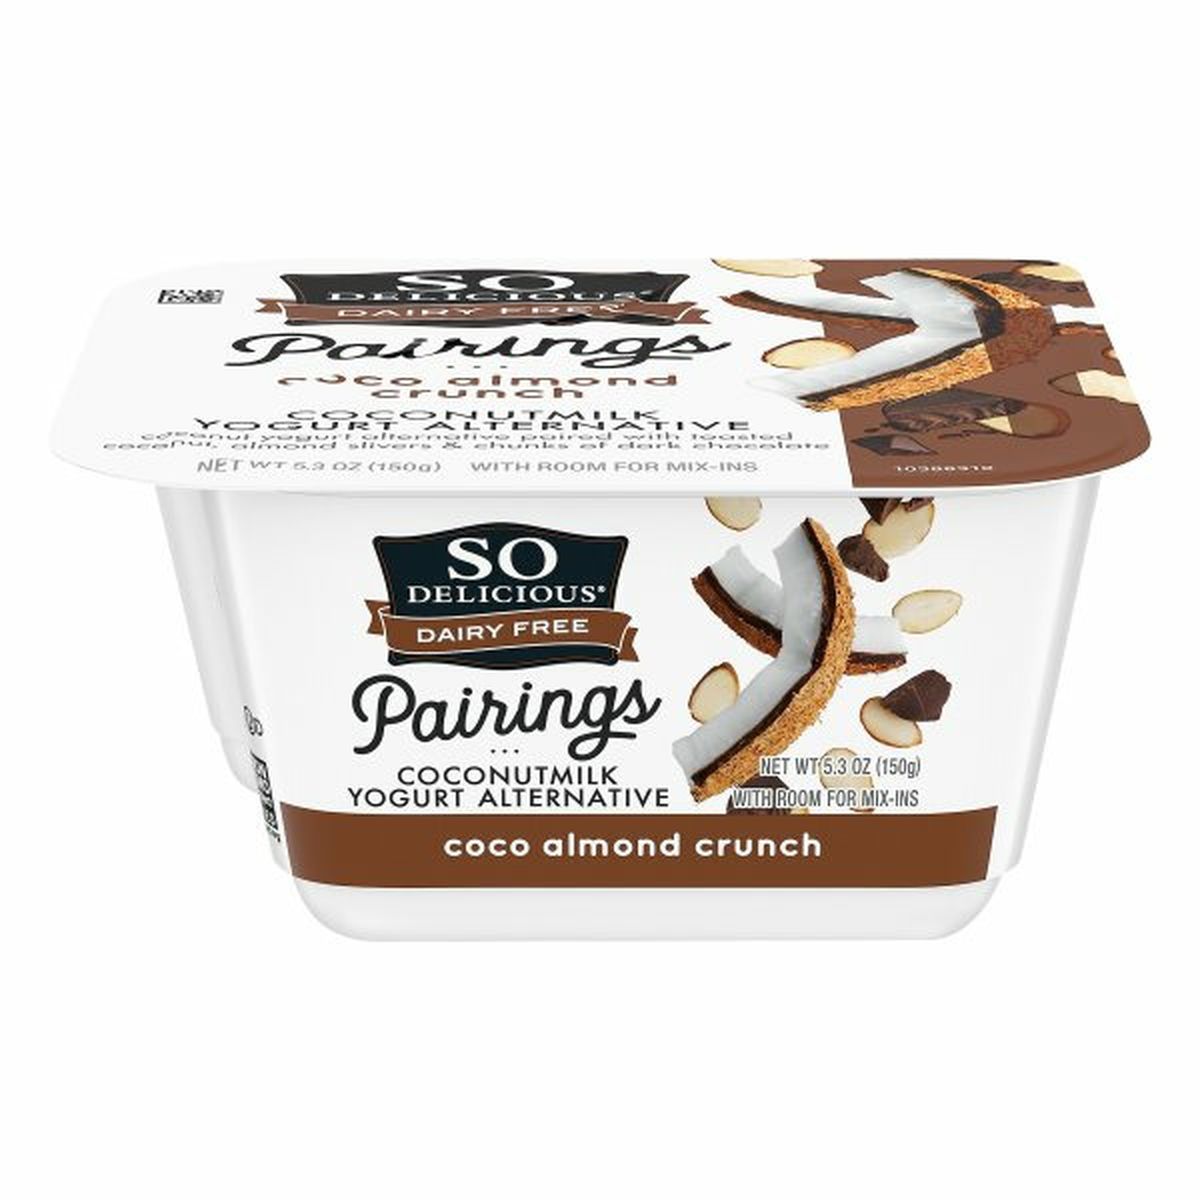 Calories in So Delicious Pairings Yogurt Alternative, Coconutmilk, Coco Almond Crunch